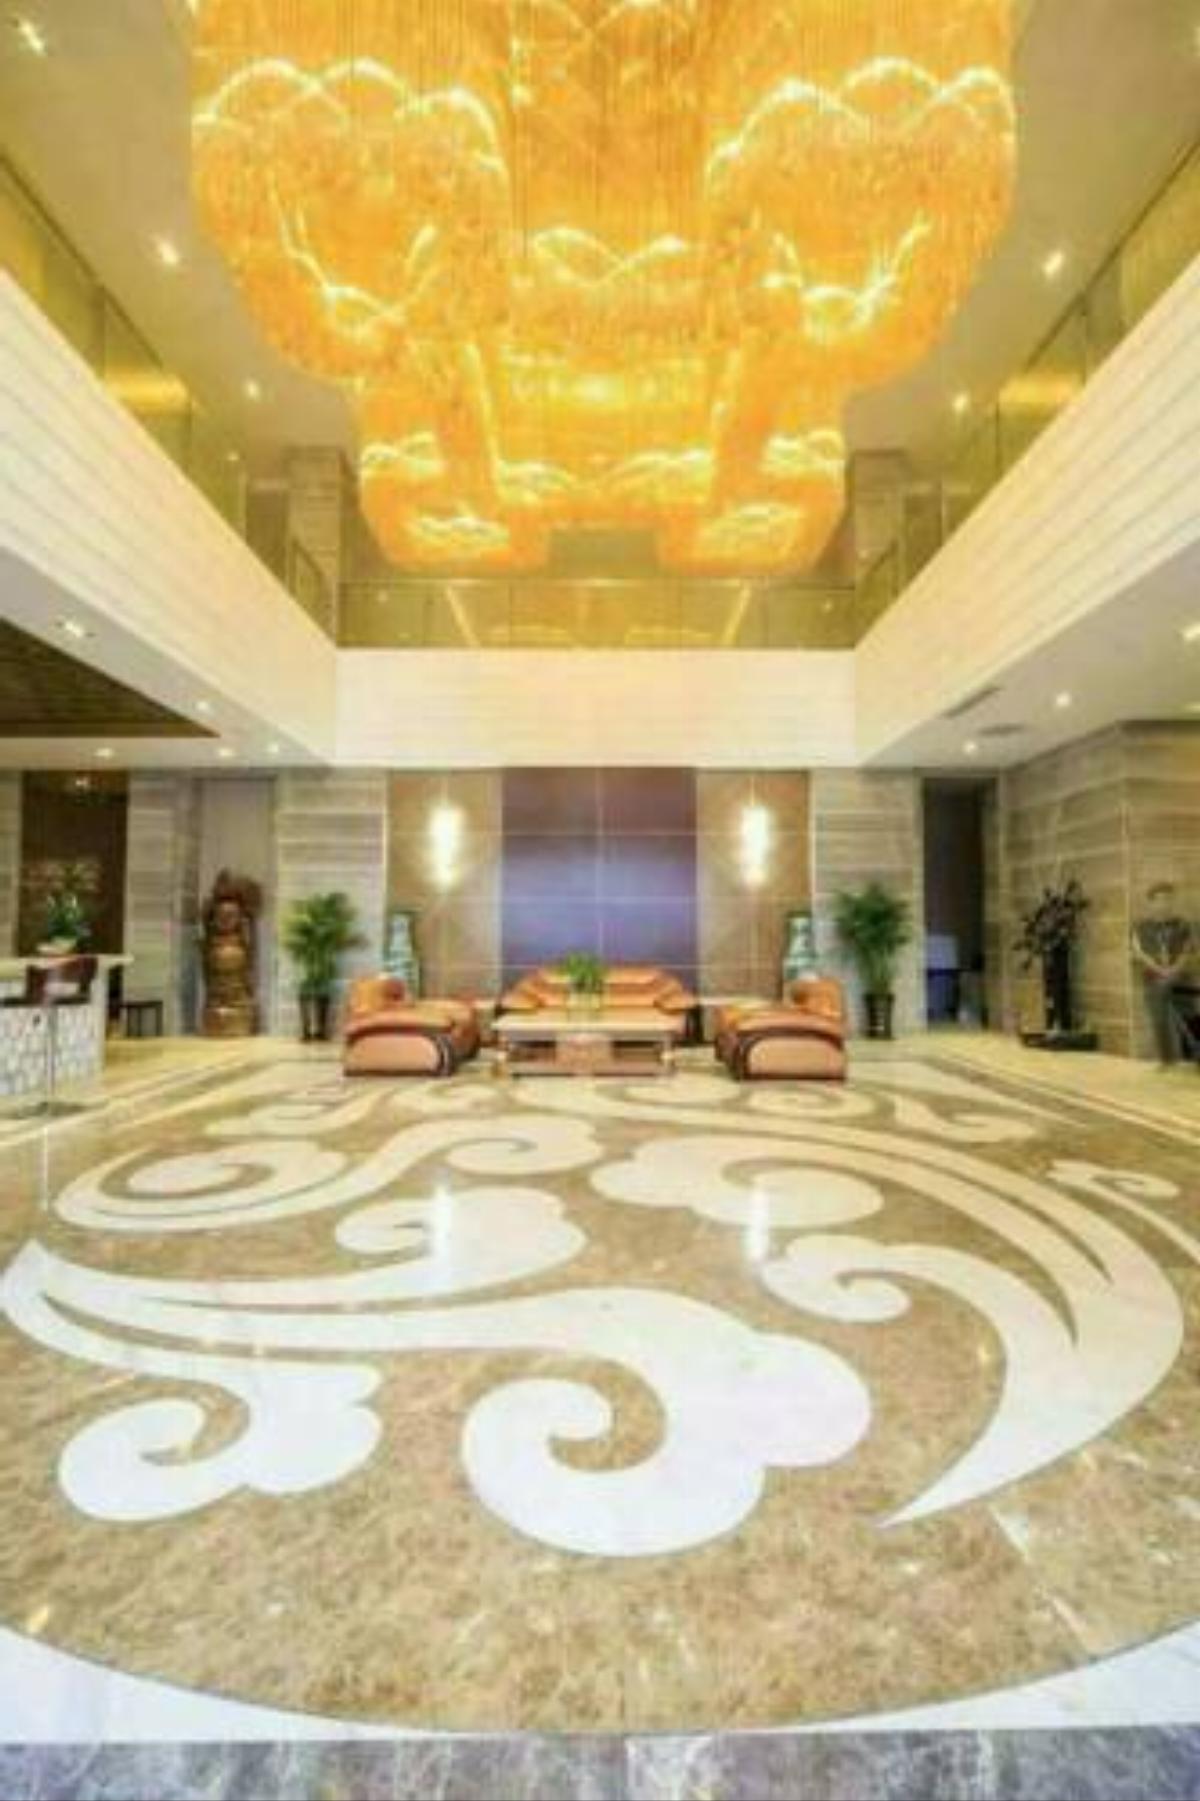 Qingdao Ge Xin Hotel Hotel Jimo China